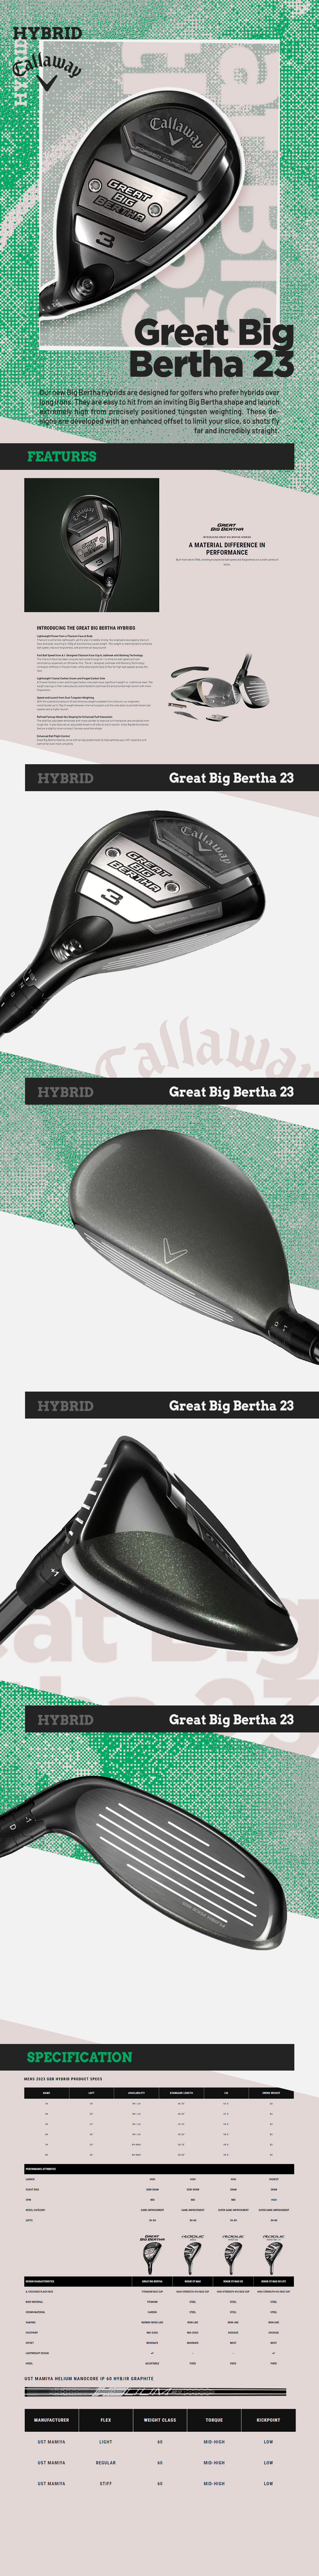 Great-Big-Bertha-23-Hybrid_desc.jpg